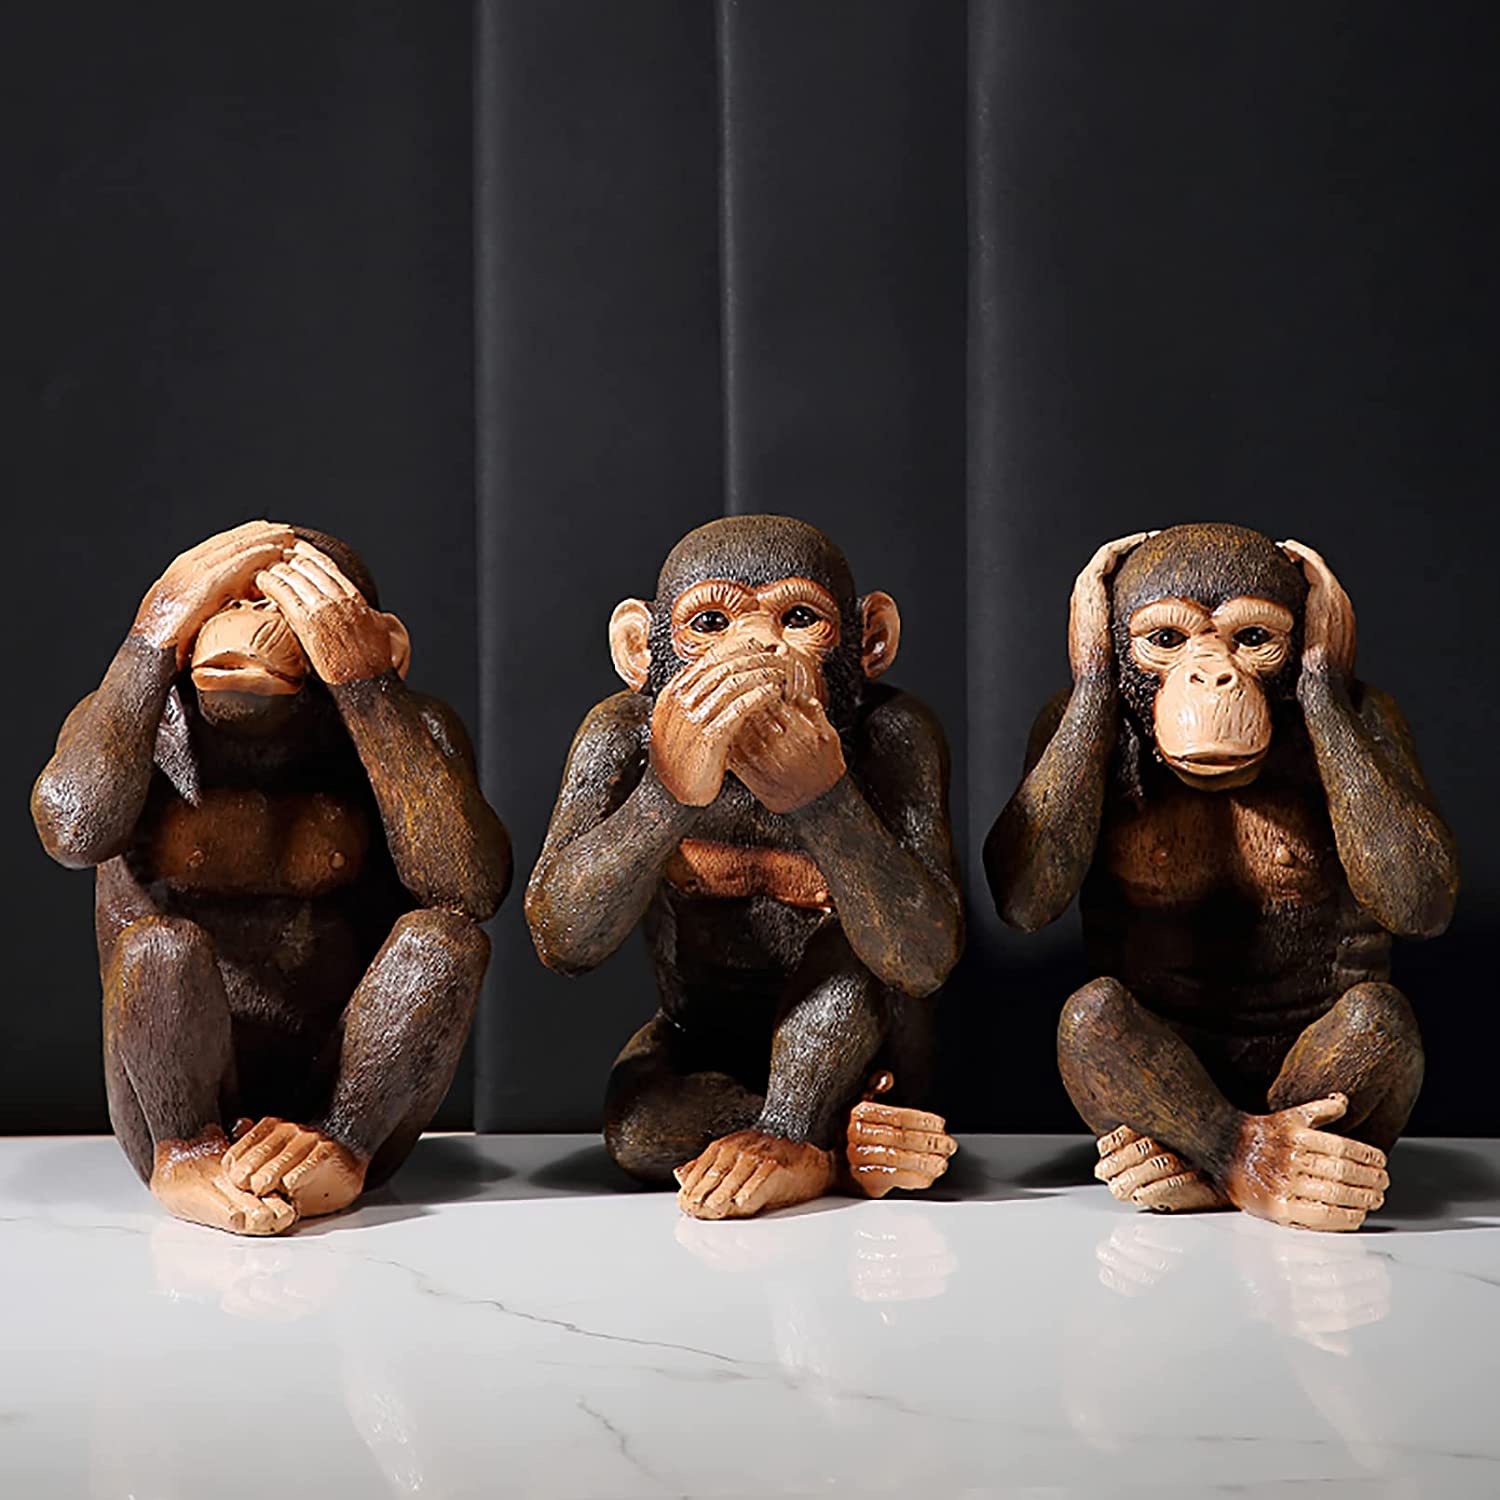 3 Deko Affen sitzend - "ich hör nix, ich seh nix, ich sag nichts"